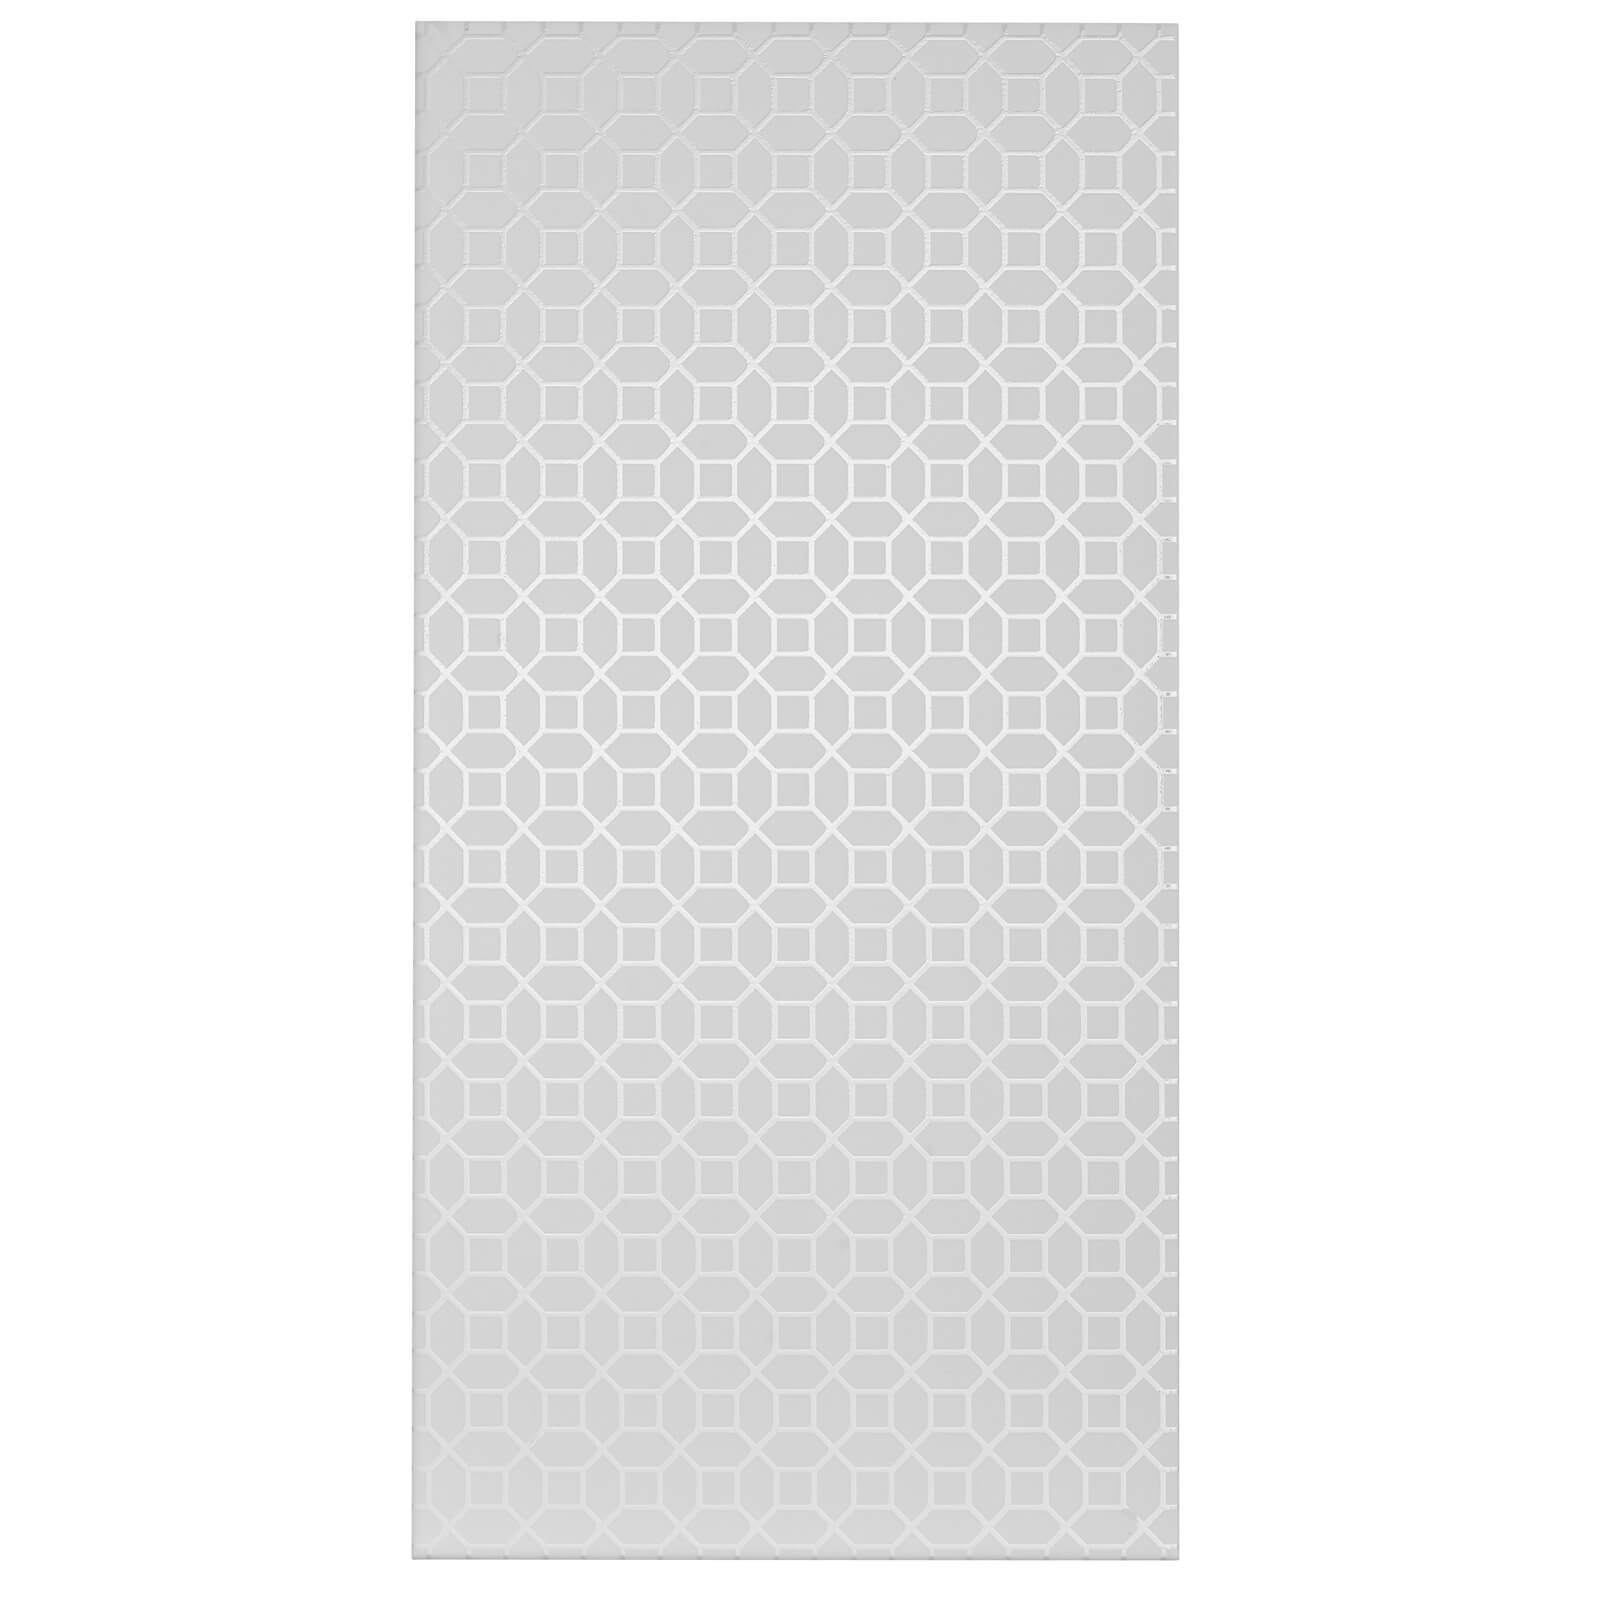 LA Marise White Pattern Wall Tile